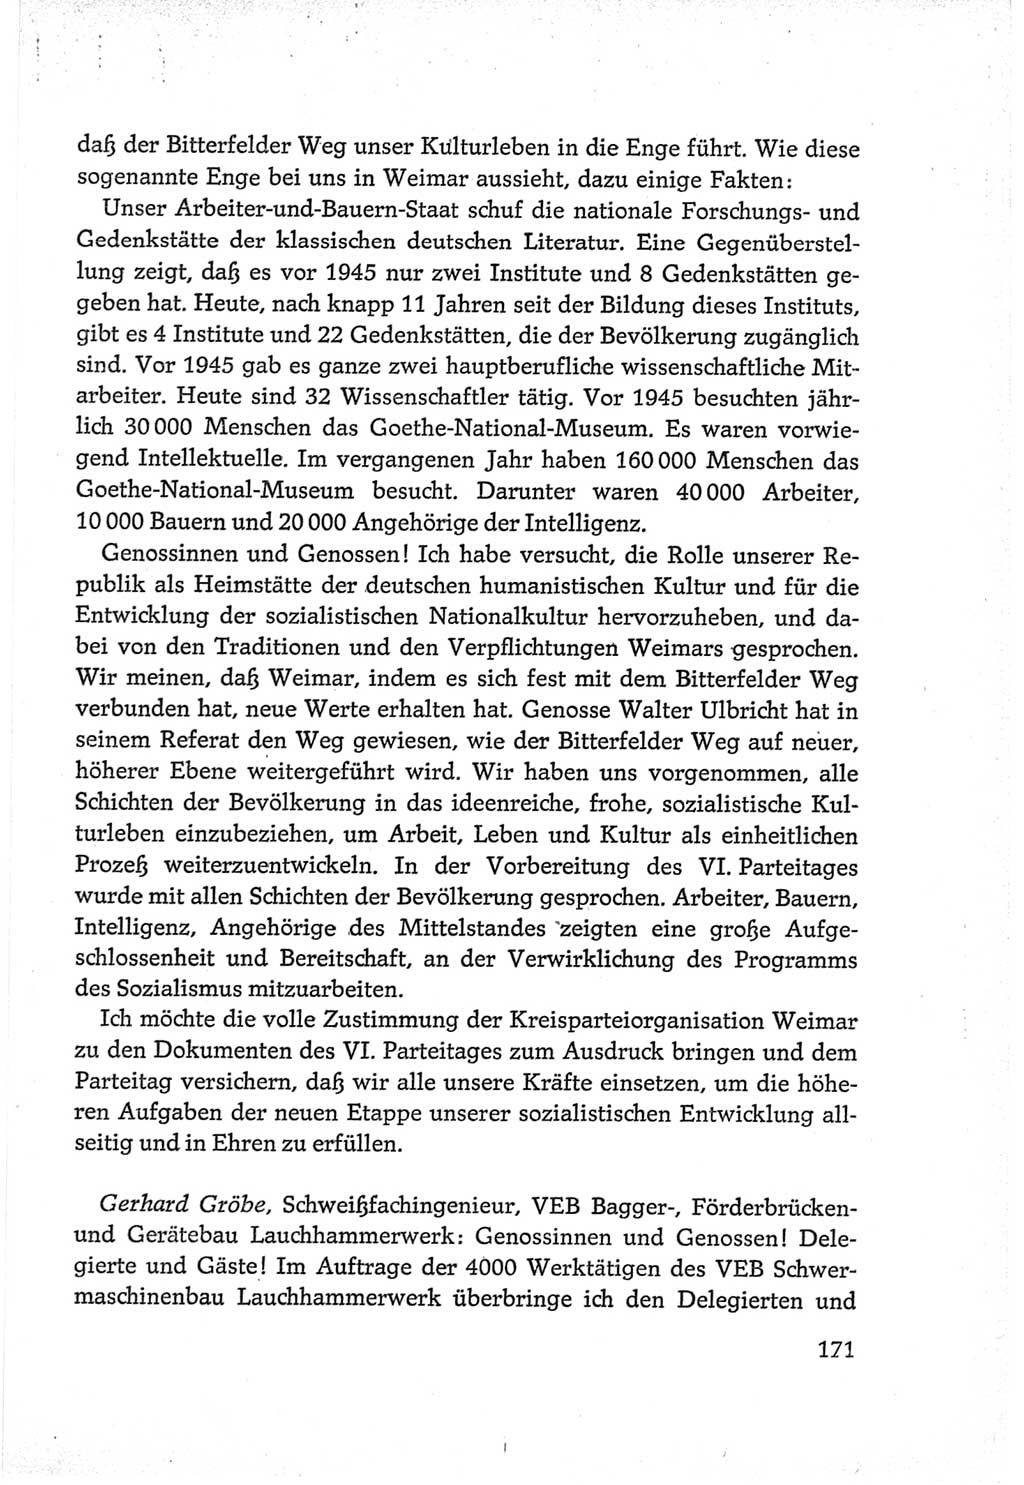 Protokoll der Verhandlungen des Ⅵ. Parteitages der Sozialistischen Einheitspartei Deutschlands (SED) [Deutsche Demokratische Republik (DDR)] 1963, Band Ⅲ, Seite 171 (Prot. Verh. Ⅵ. PT SED DDR 1963, Bd. Ⅲ, S. 171)